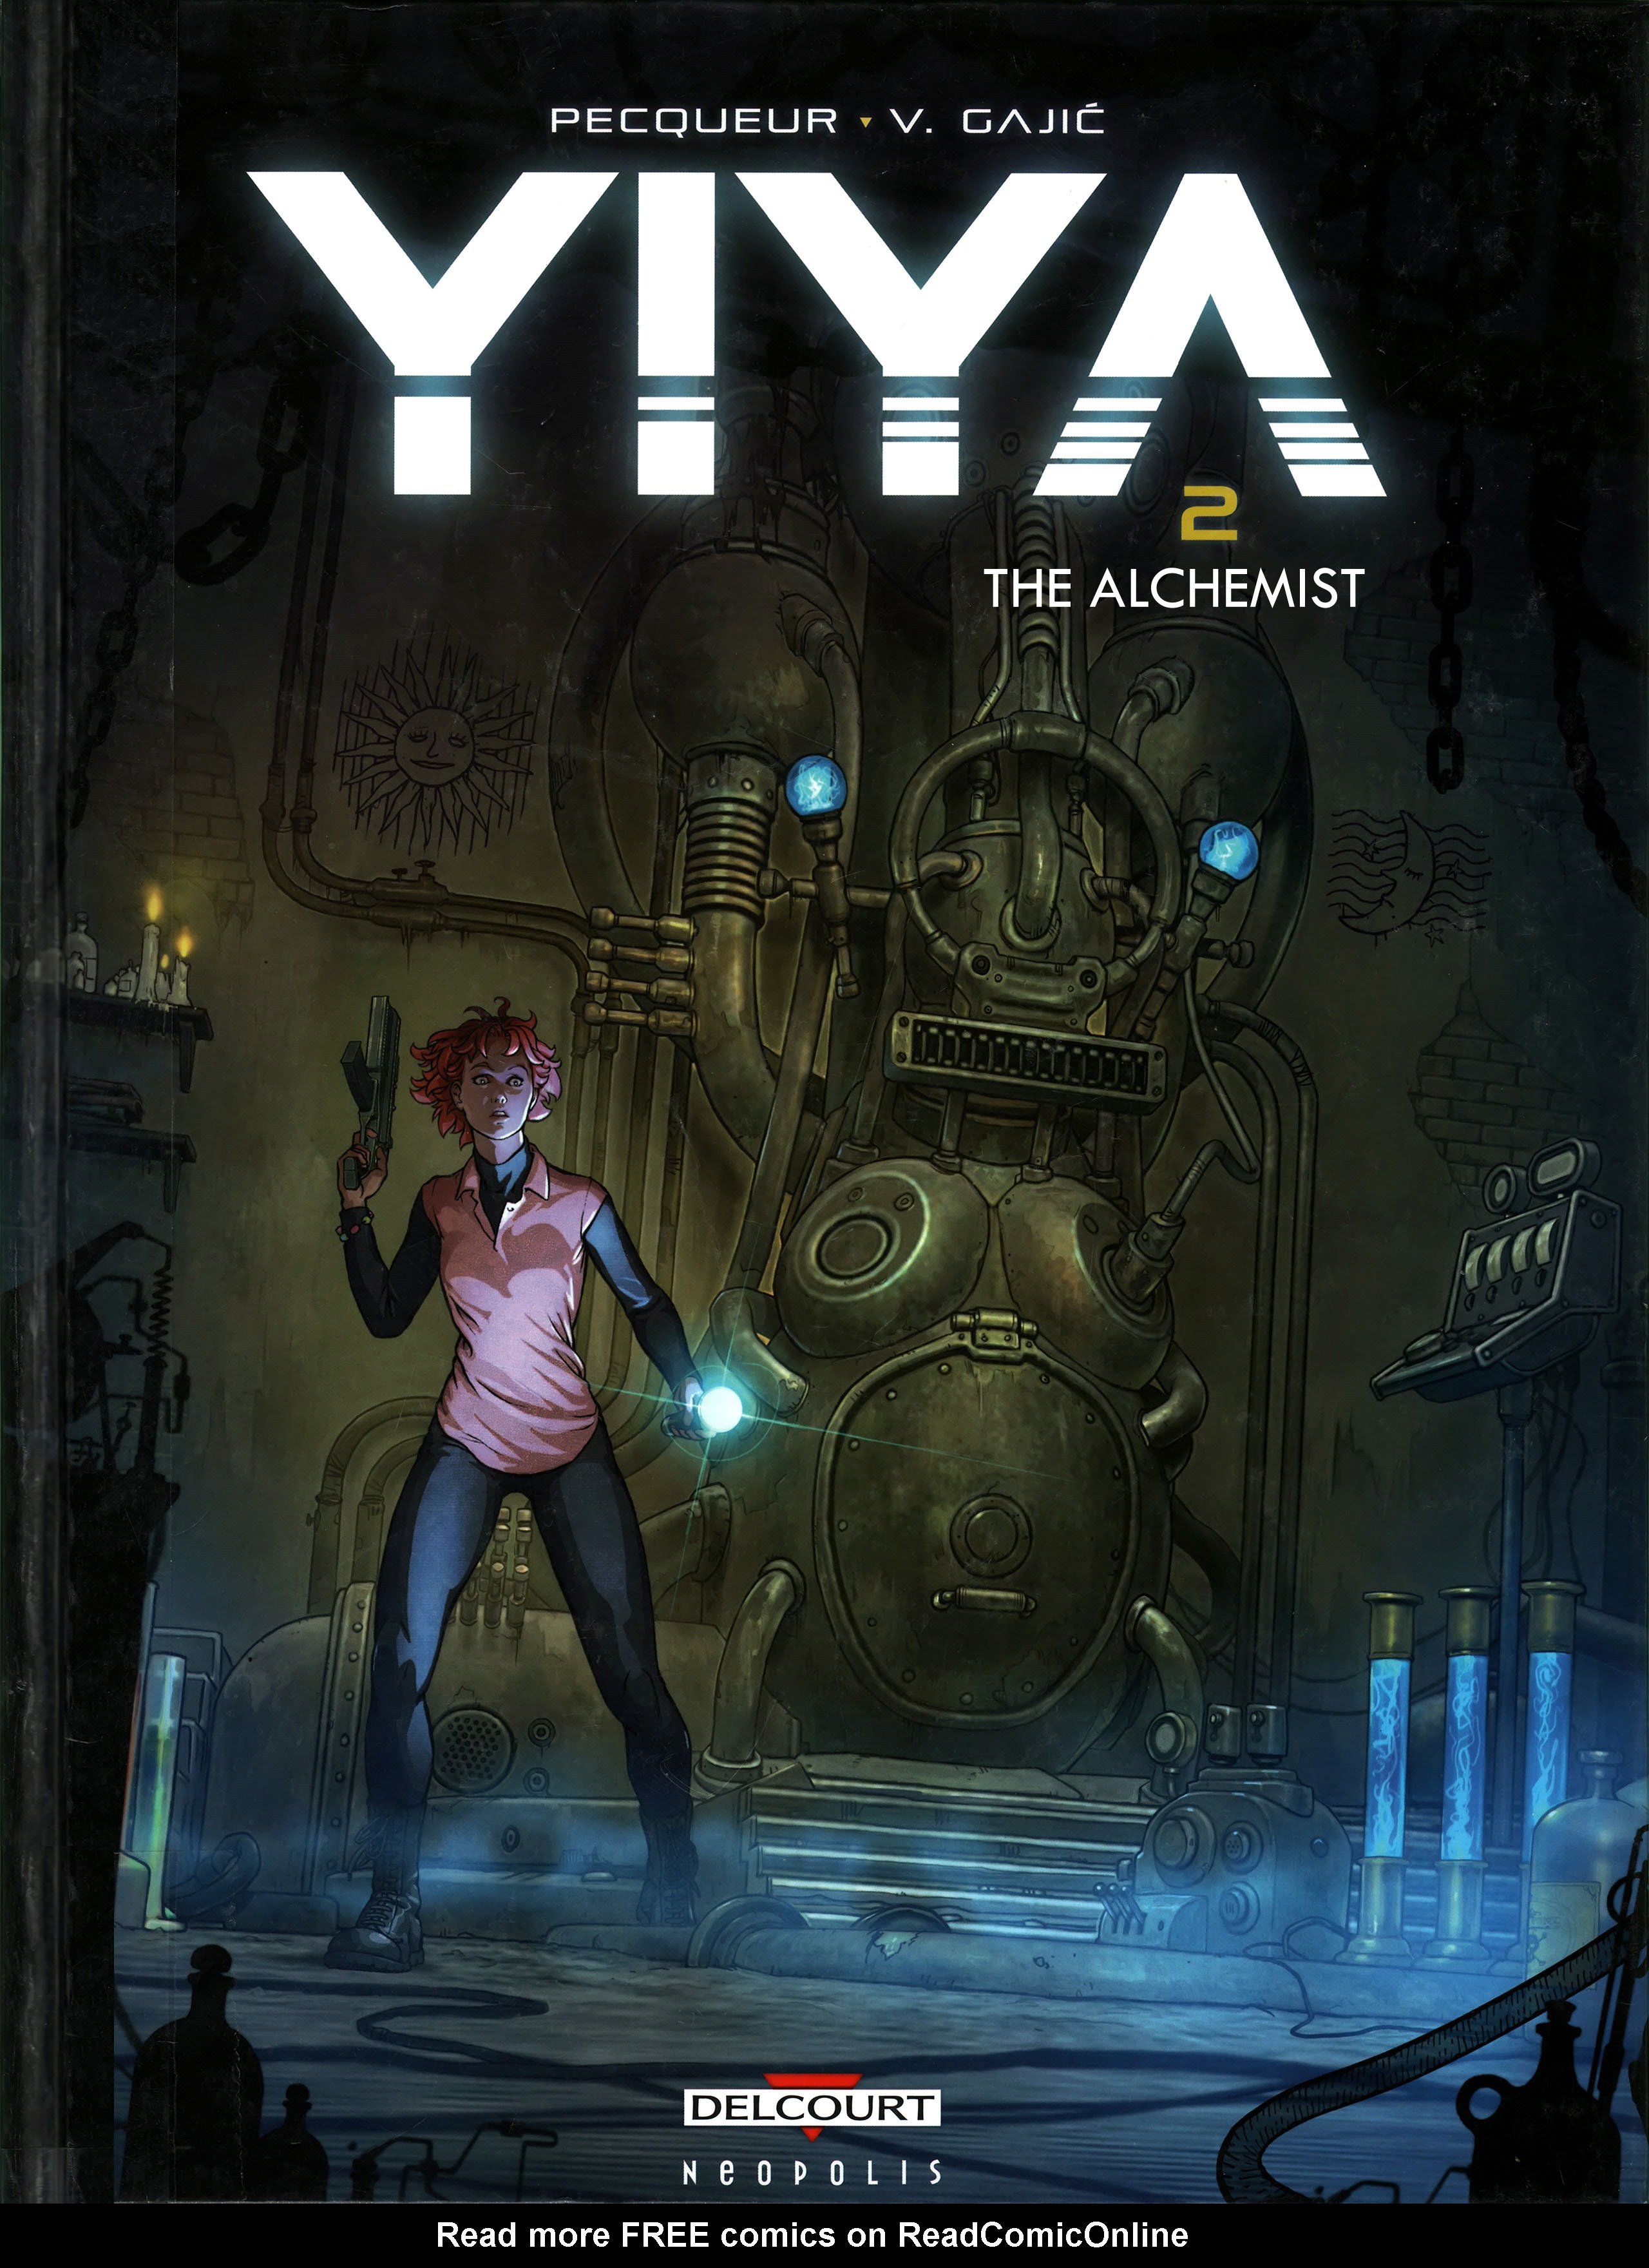 Read online Yiya comic -  Issue #2 - 1